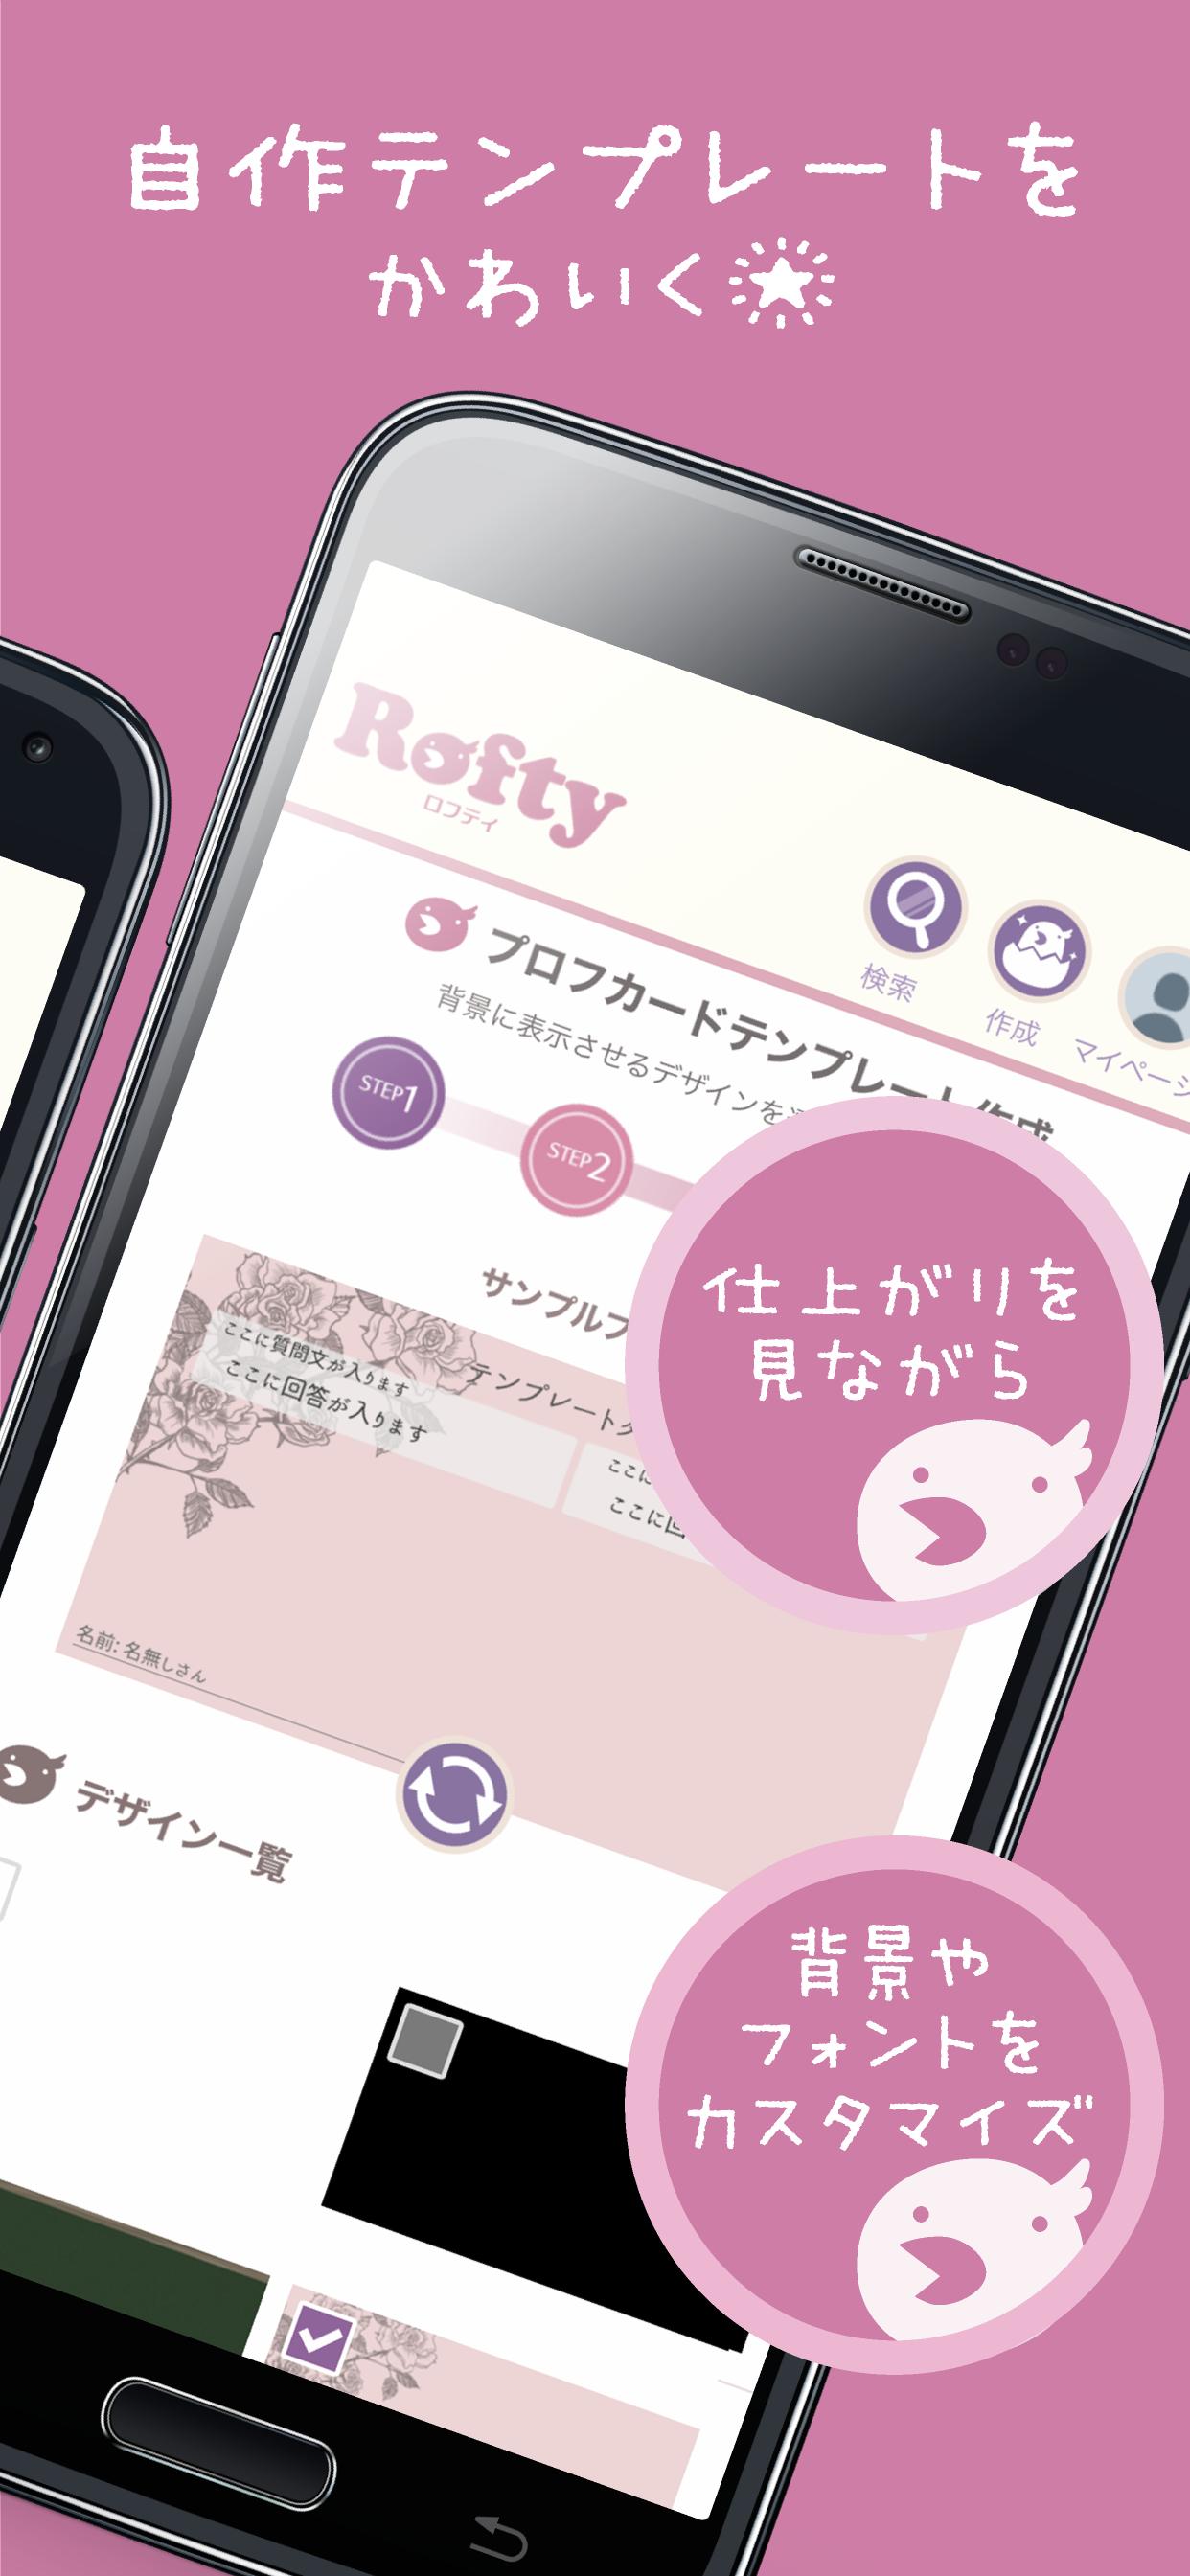 Rofty ロフティ プロフカードをアプリで作成 懐かしのプロフィール帳をオンラインで集める For Android Apk Download